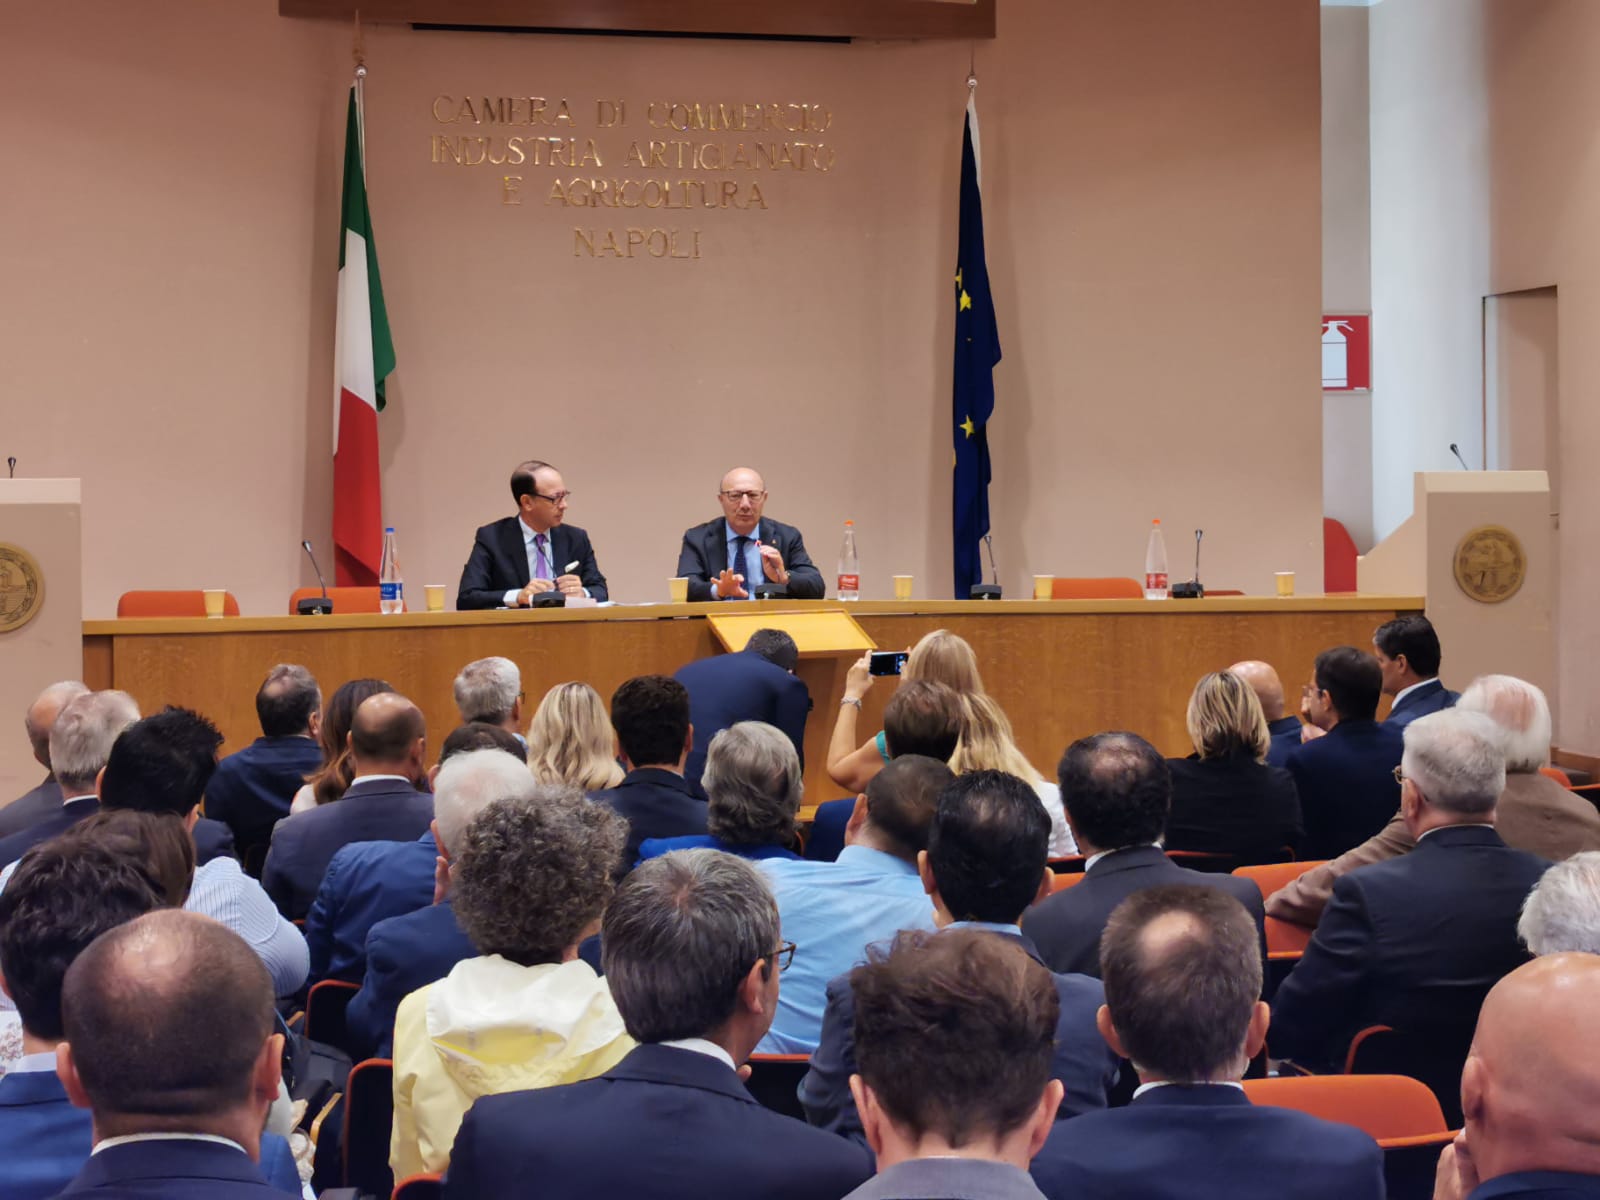 La Camera di Commercio di Napoli insedia le Consulte Tematiche